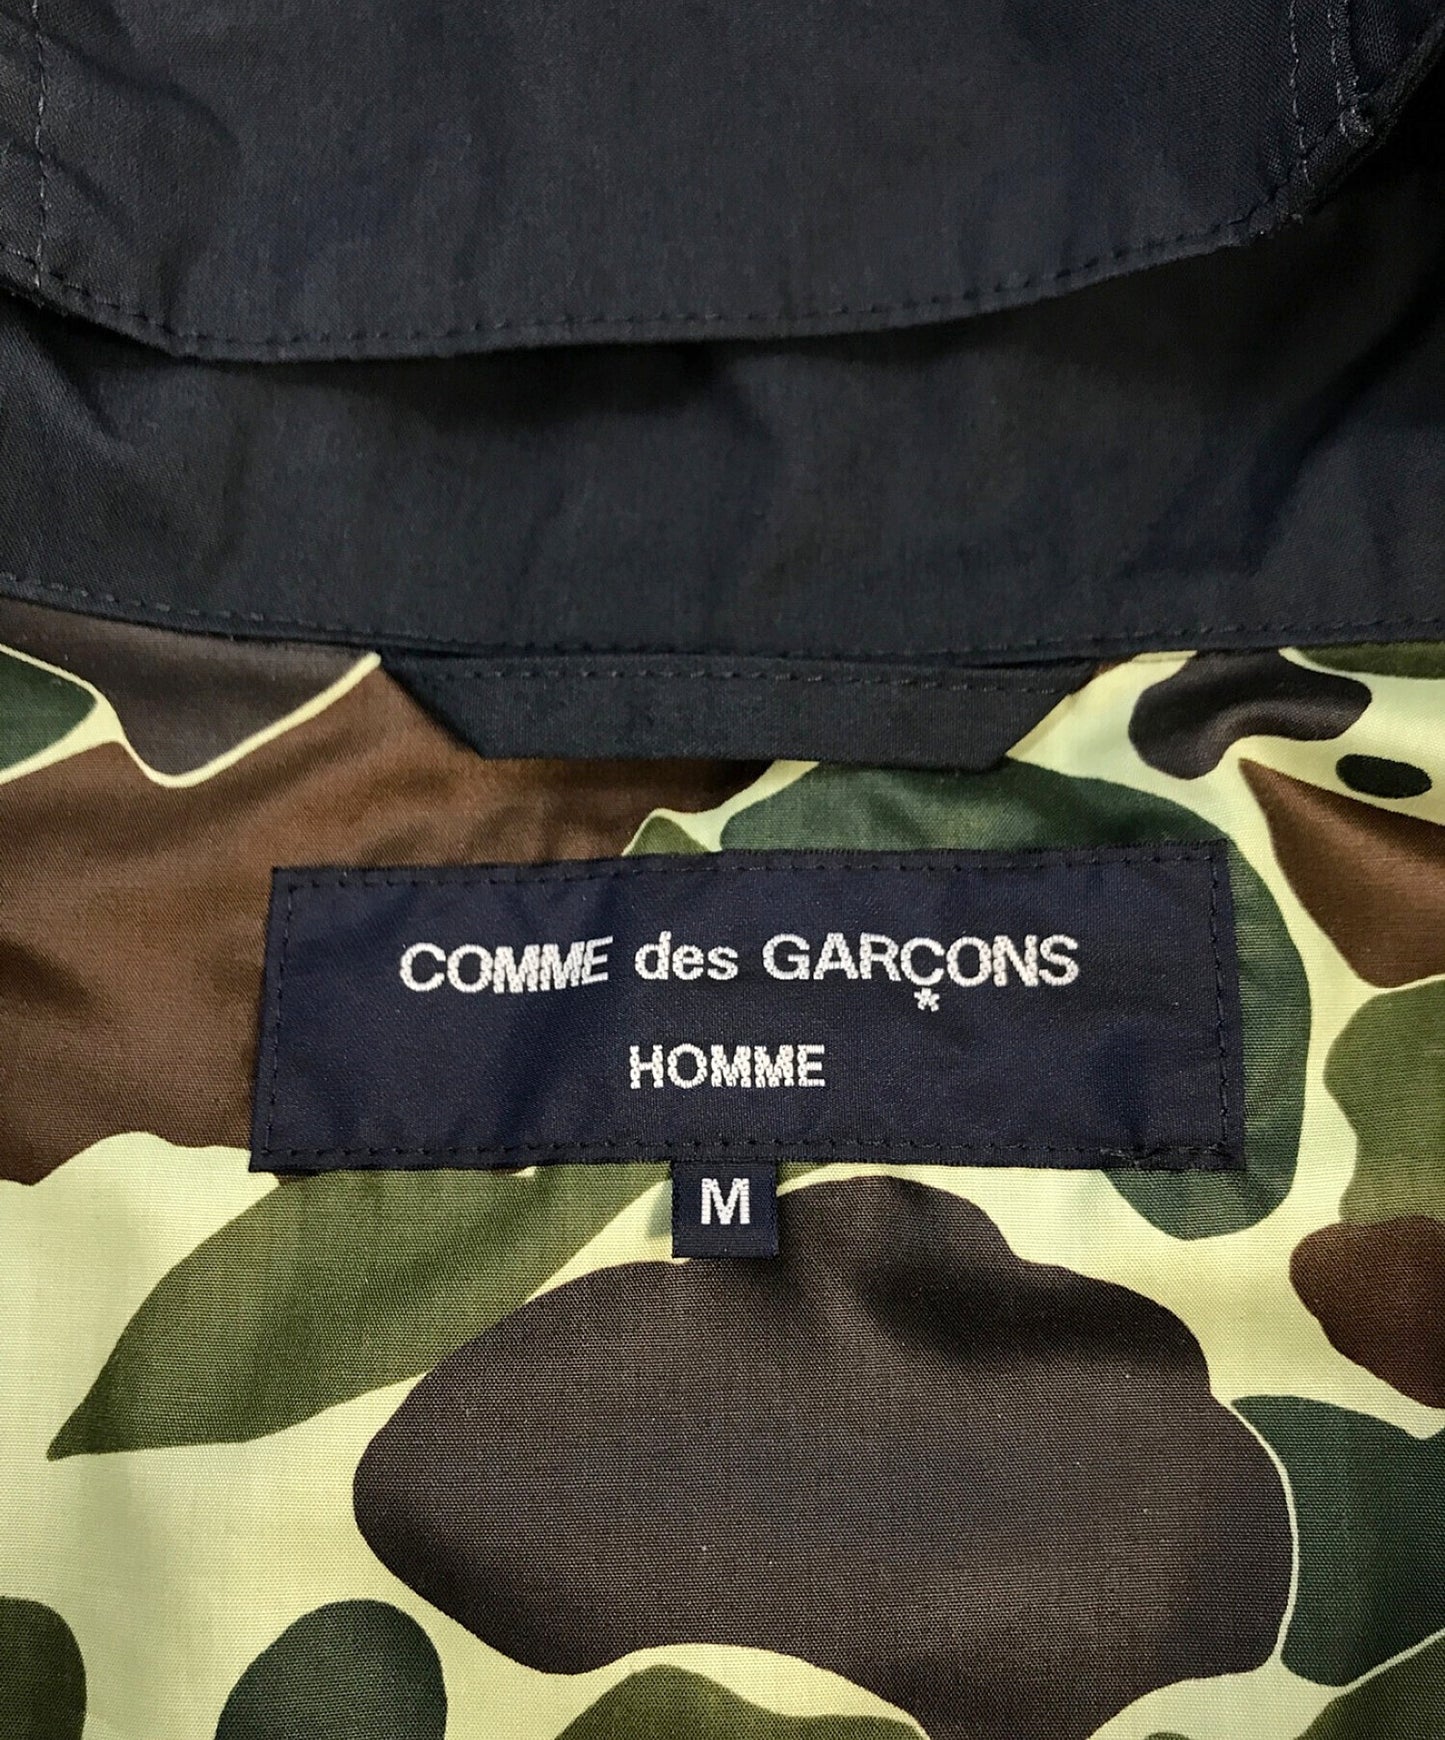 Comme des Garcons Homme高密度天氣產品完成Anorak連帽衫HI-J007